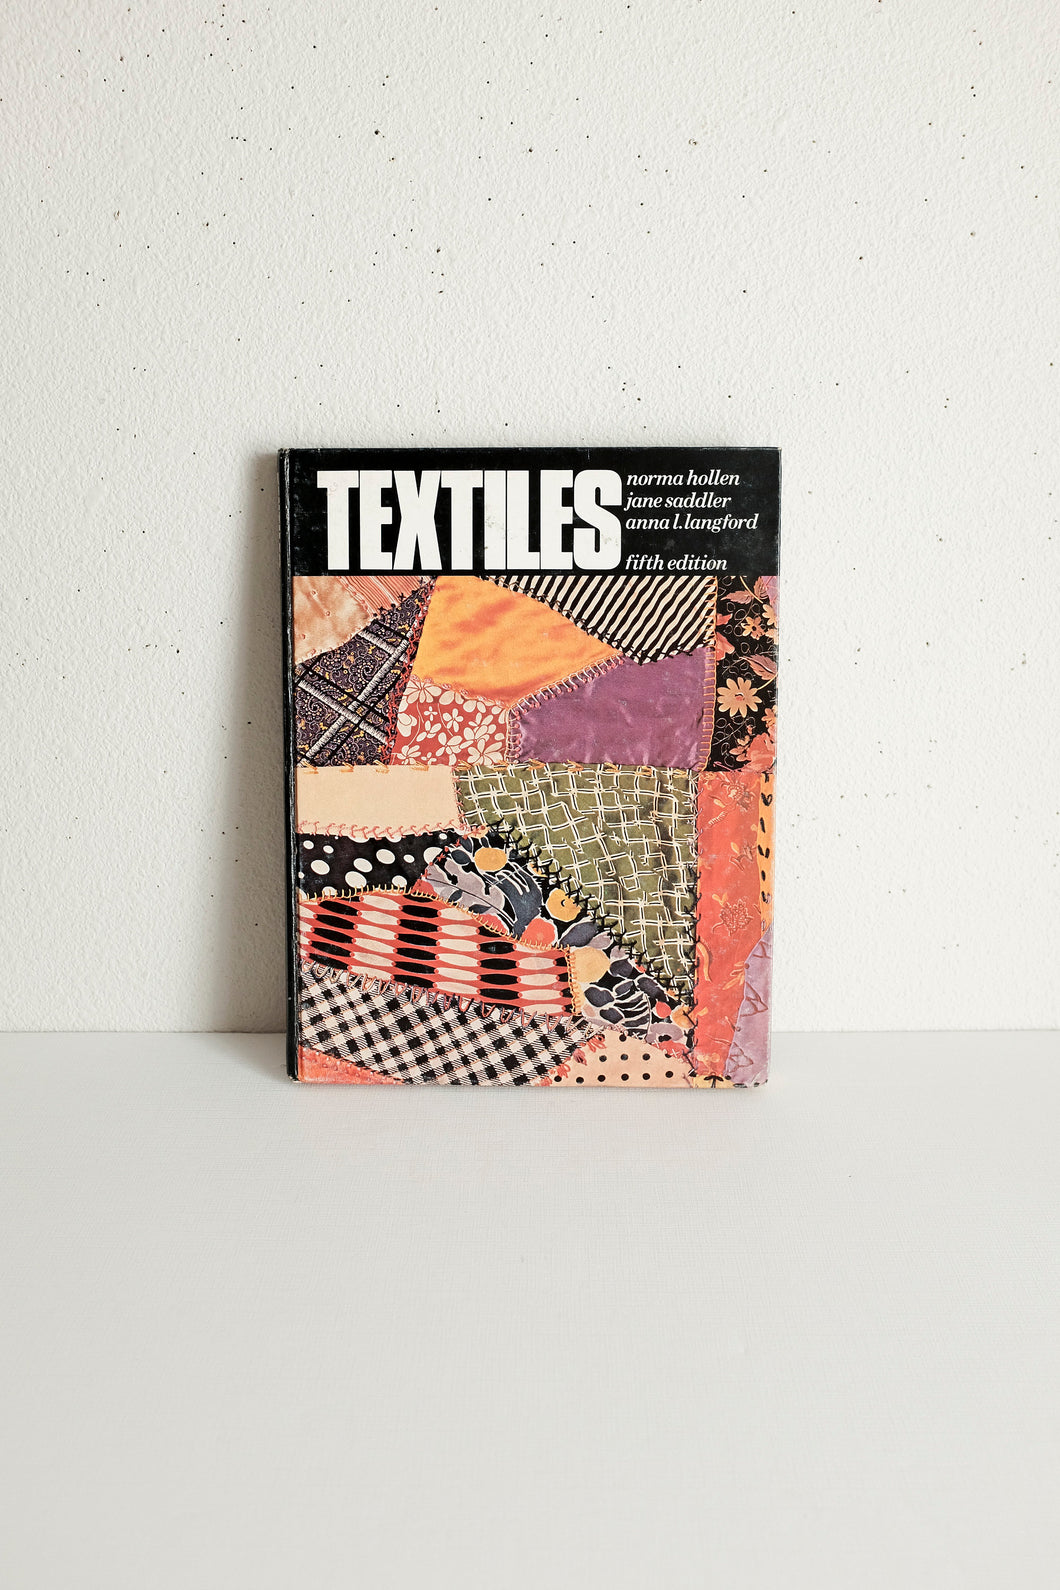 Textiles Book 1979